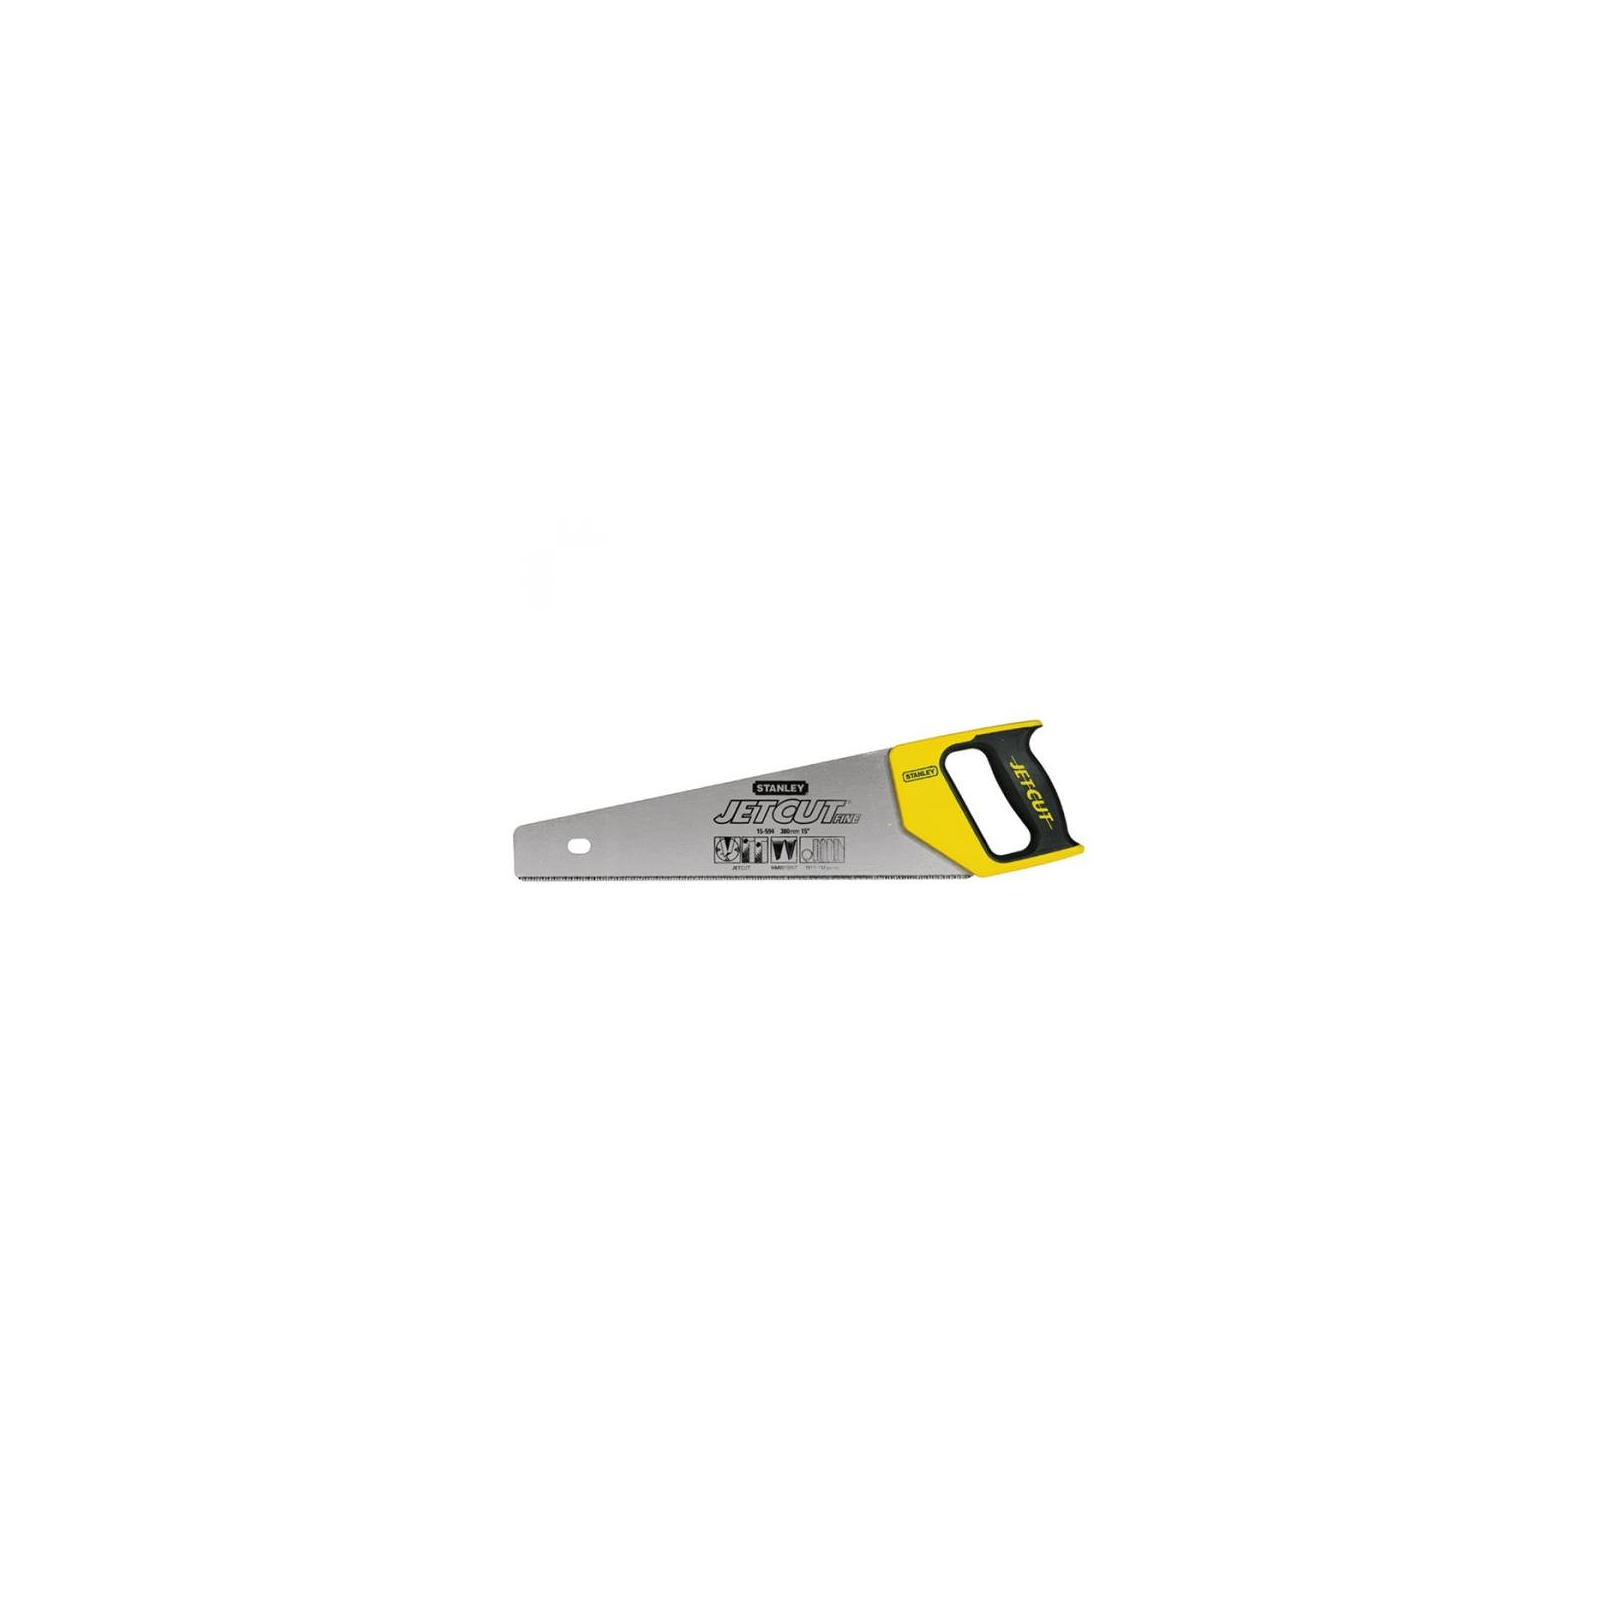 Ножовка Stanley Jet-Cut Fine 11 зубьев на дюйм, длина 500мм. (2-15-599)